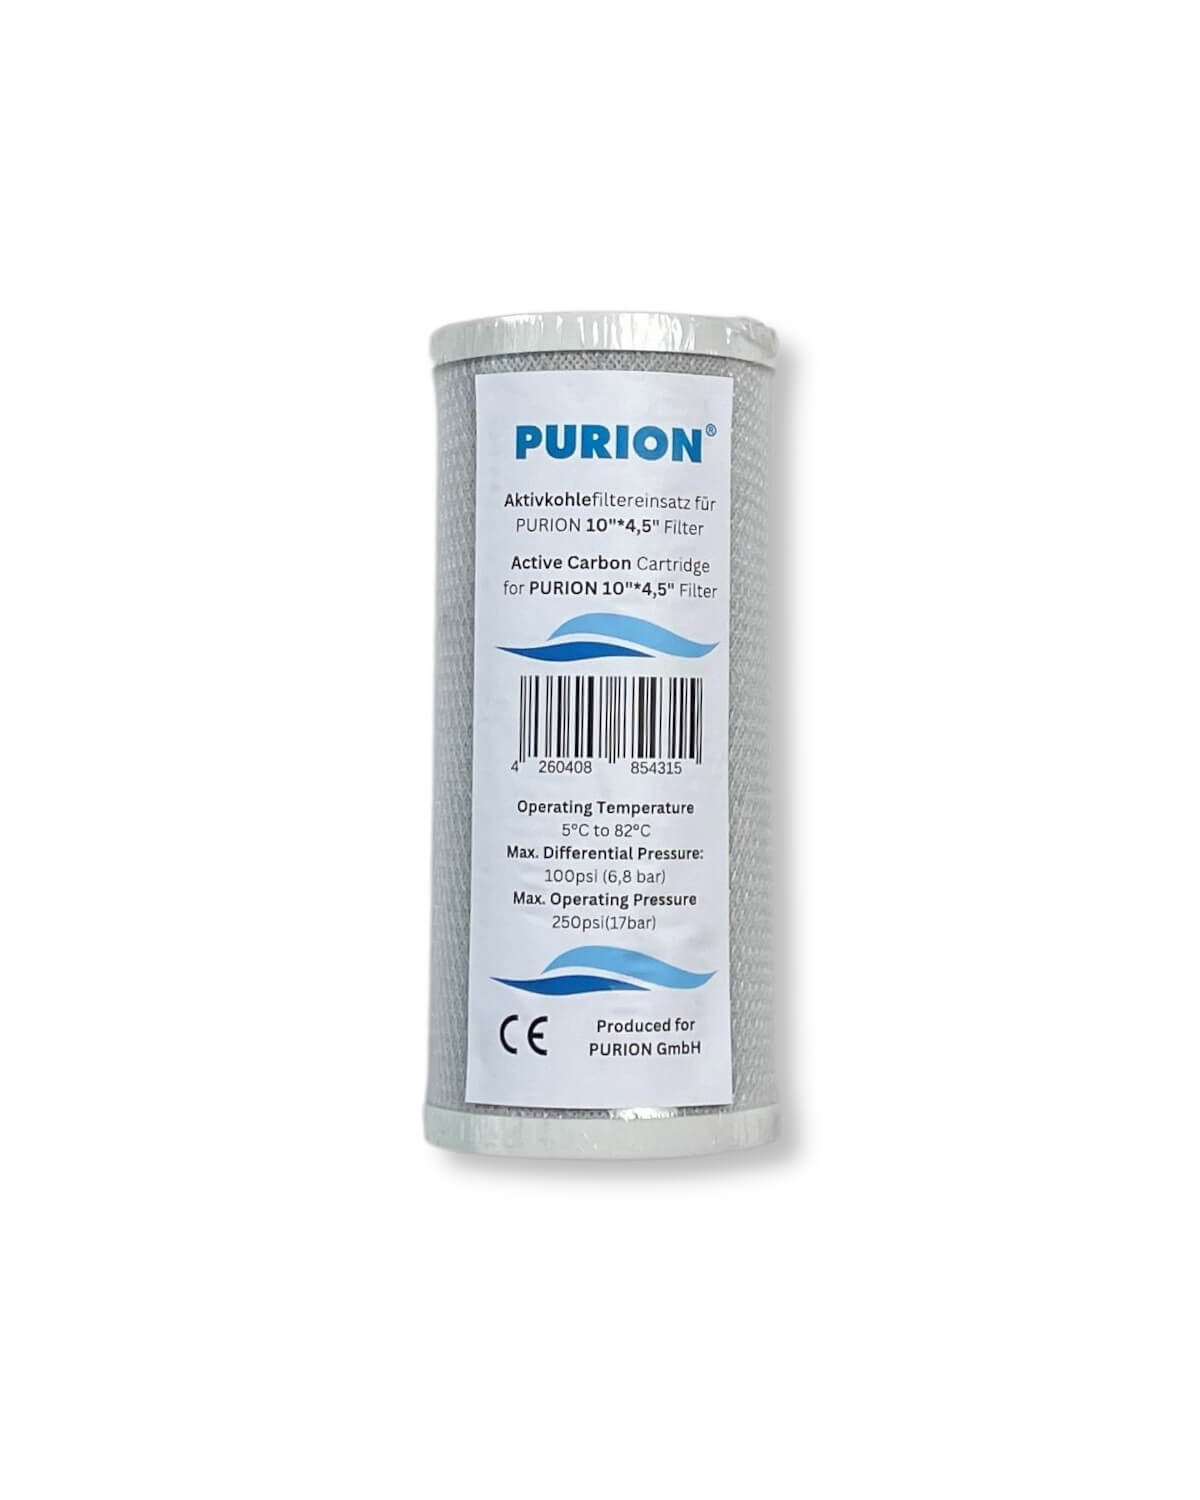 Beschreibung: PURION Filtereinsatz Big Blue 10x4,5 Zoll Aktivkohle-Ersatz für Purion Wasserfilterkartusche mit Aktivkohle-Kartusche (Markenname: PURION GmbH).